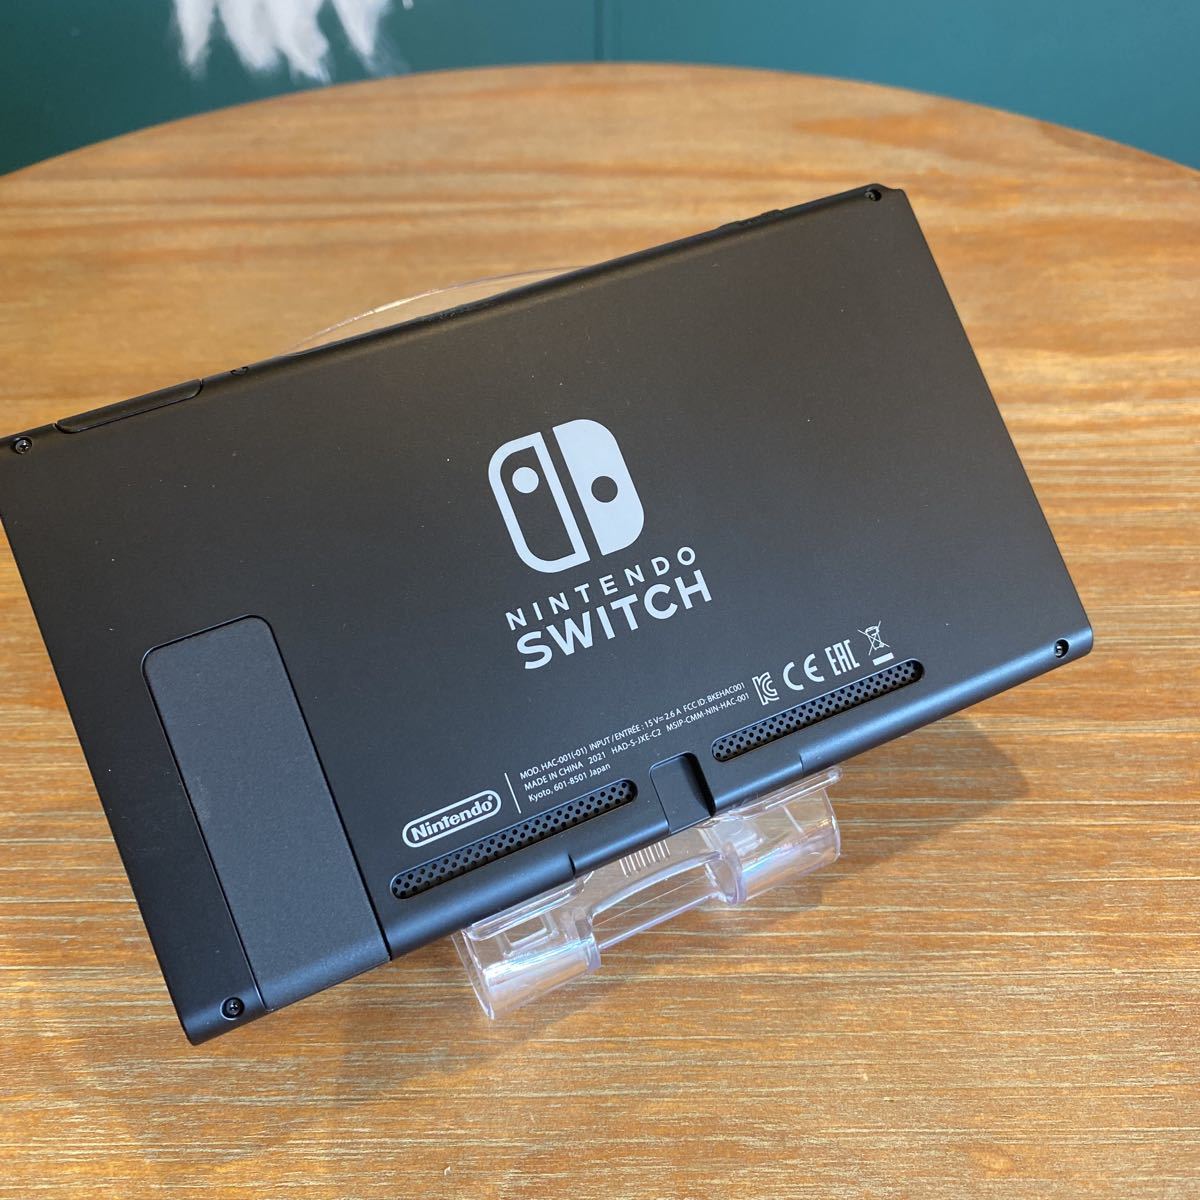 ショッピング直販店 Nintendo Switch HAC-001 ニンテンドースイッチ 家庭用ゲーム本体